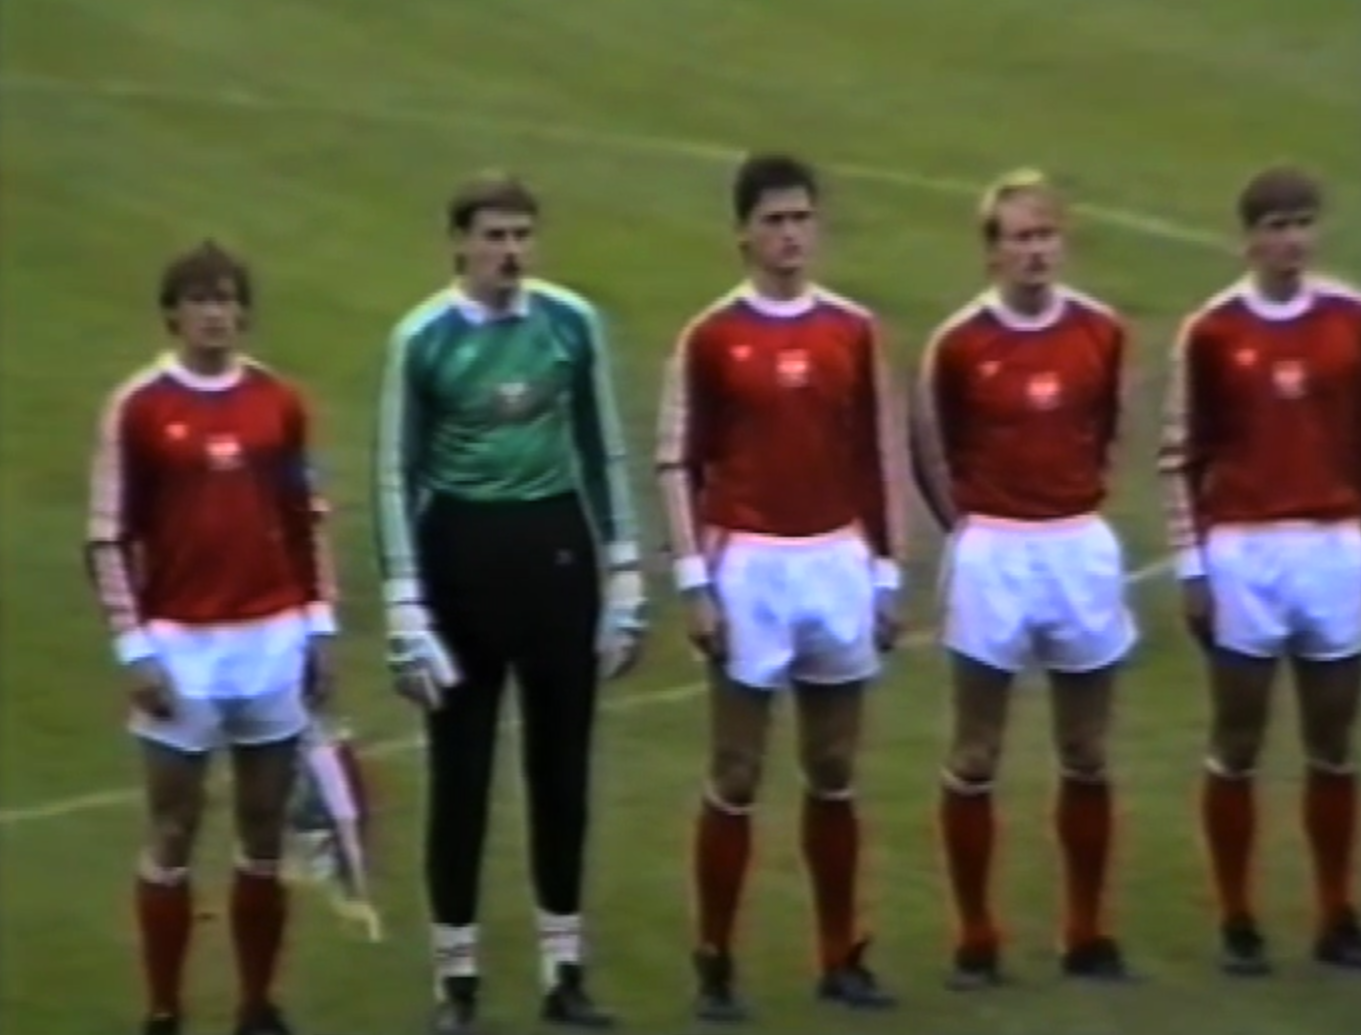 Reprezentacja Polski przed meczem z NRD w Chociebużu. Od lewej: Jan Urban, Józef Wandzik, Damian Łukasik, Witold Bendkowski i Dariusz Wdowczyk.